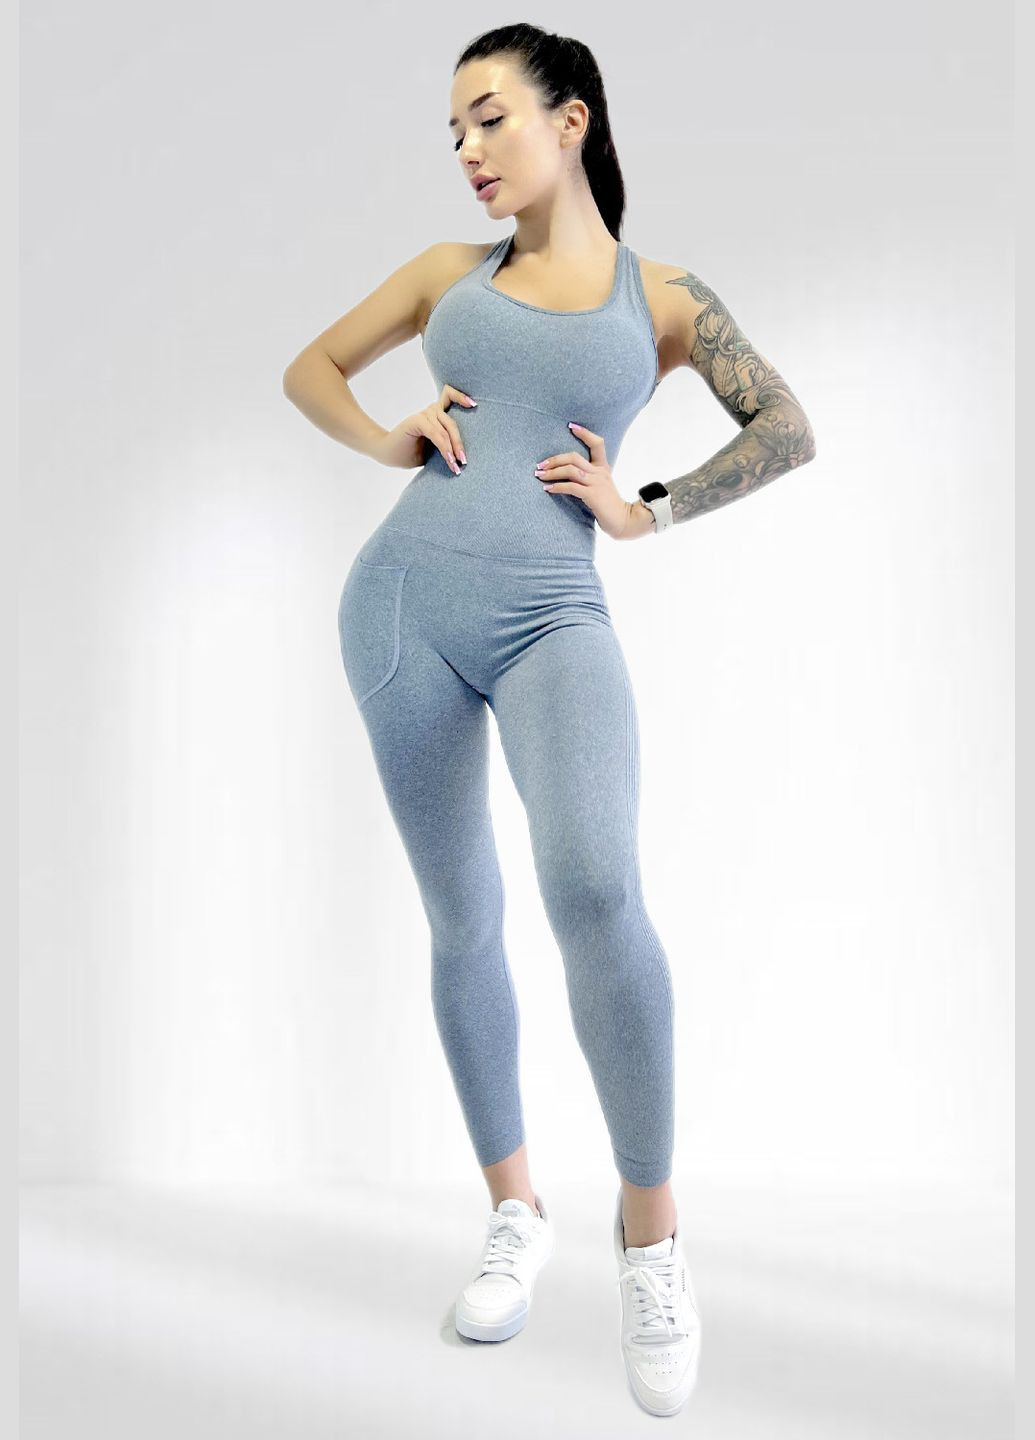 Спортивный комбинезон женский для гимнастики йоги фитнеса LILAFIT комбинезон-брюки серый спортивный нейлон